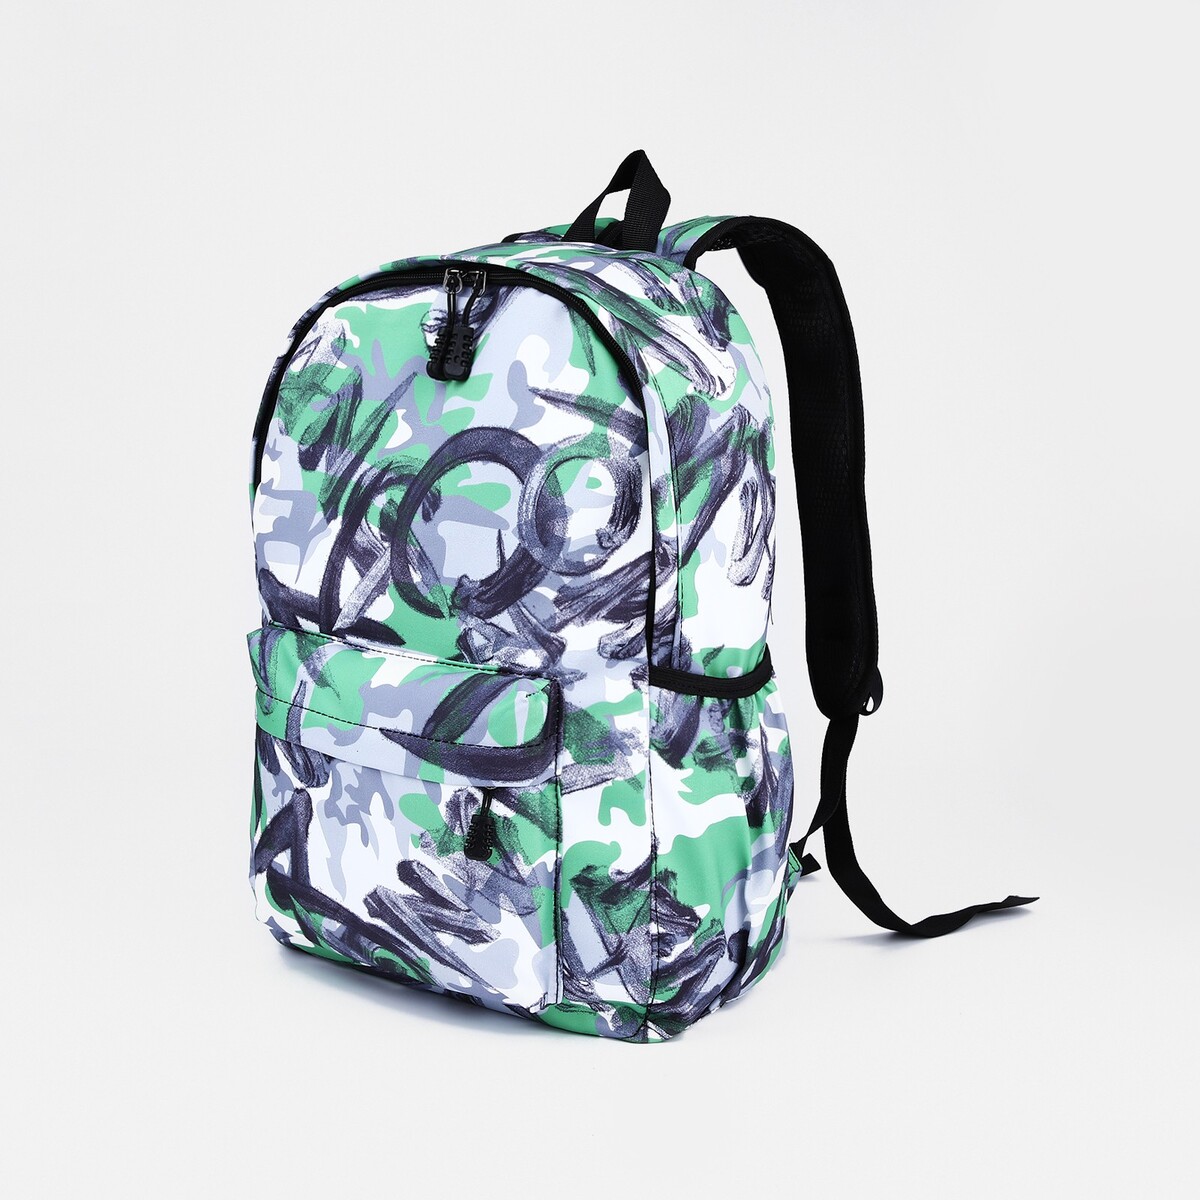 Рюкзак школьный из текстиля на молнии, 3 кармана, цвет зеленый/серый рюкзак школьный из текстиля на молнии 3 кармана пенал зеленый